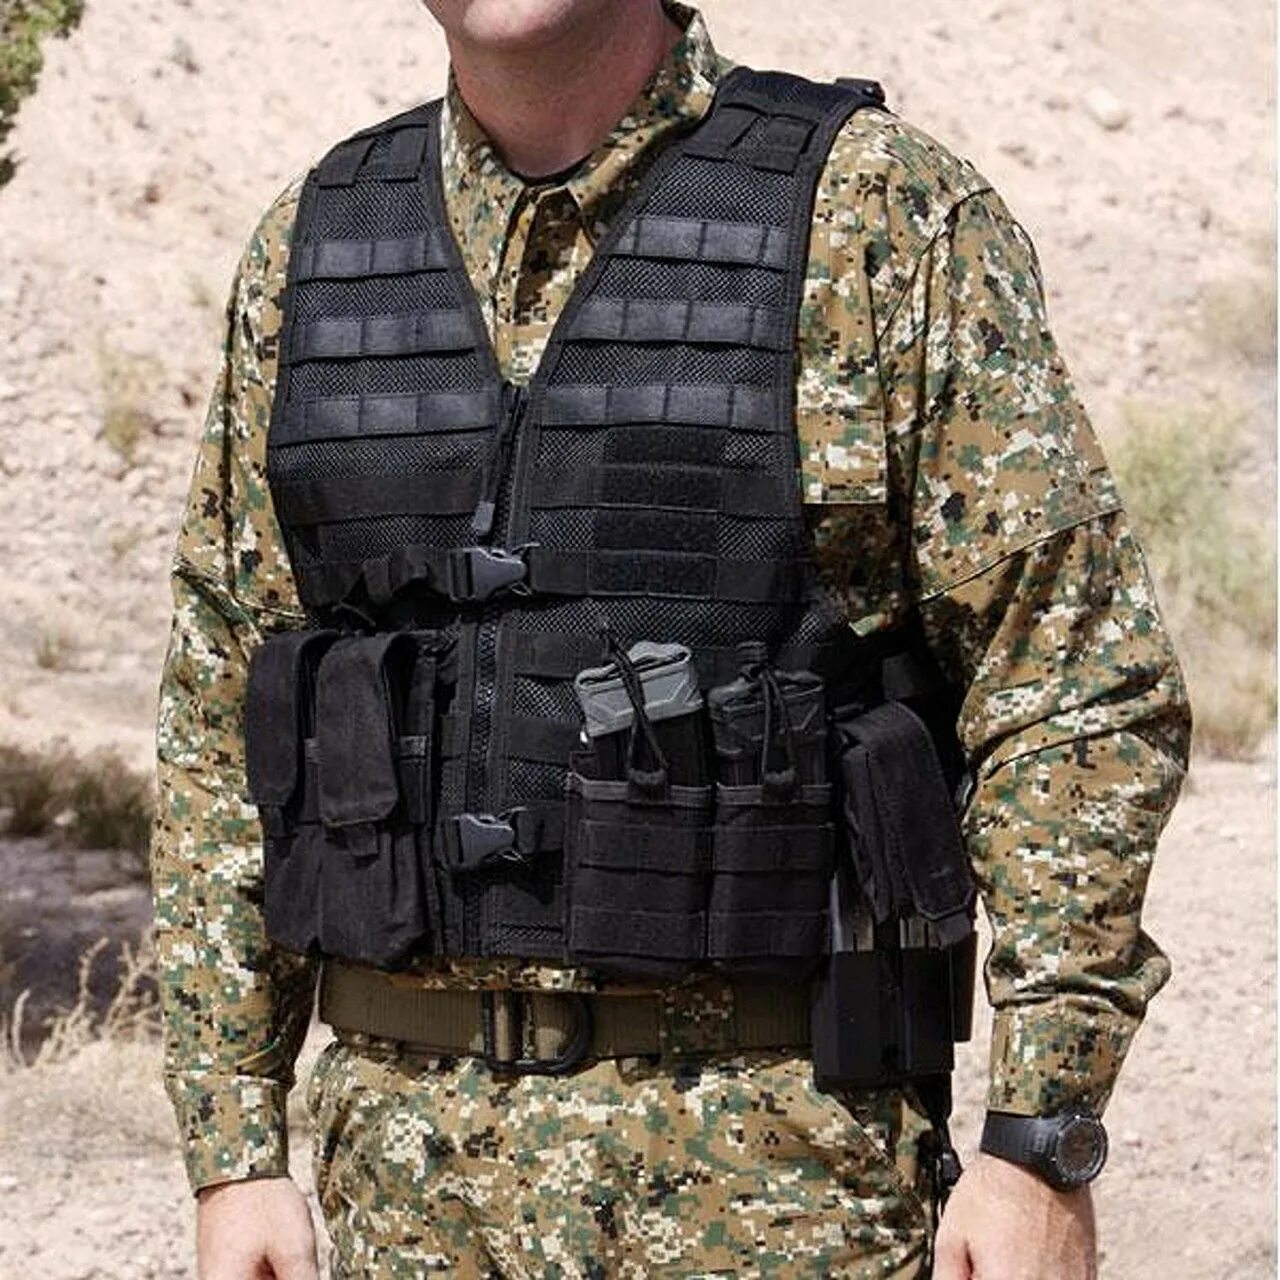 Tactical vest. 5.11 Tactical Vest. Бронежилет 5.11 велкро. Жилет тактический 5.11 Tactical Vest ЧВК. 5.11 Tactical костюм.